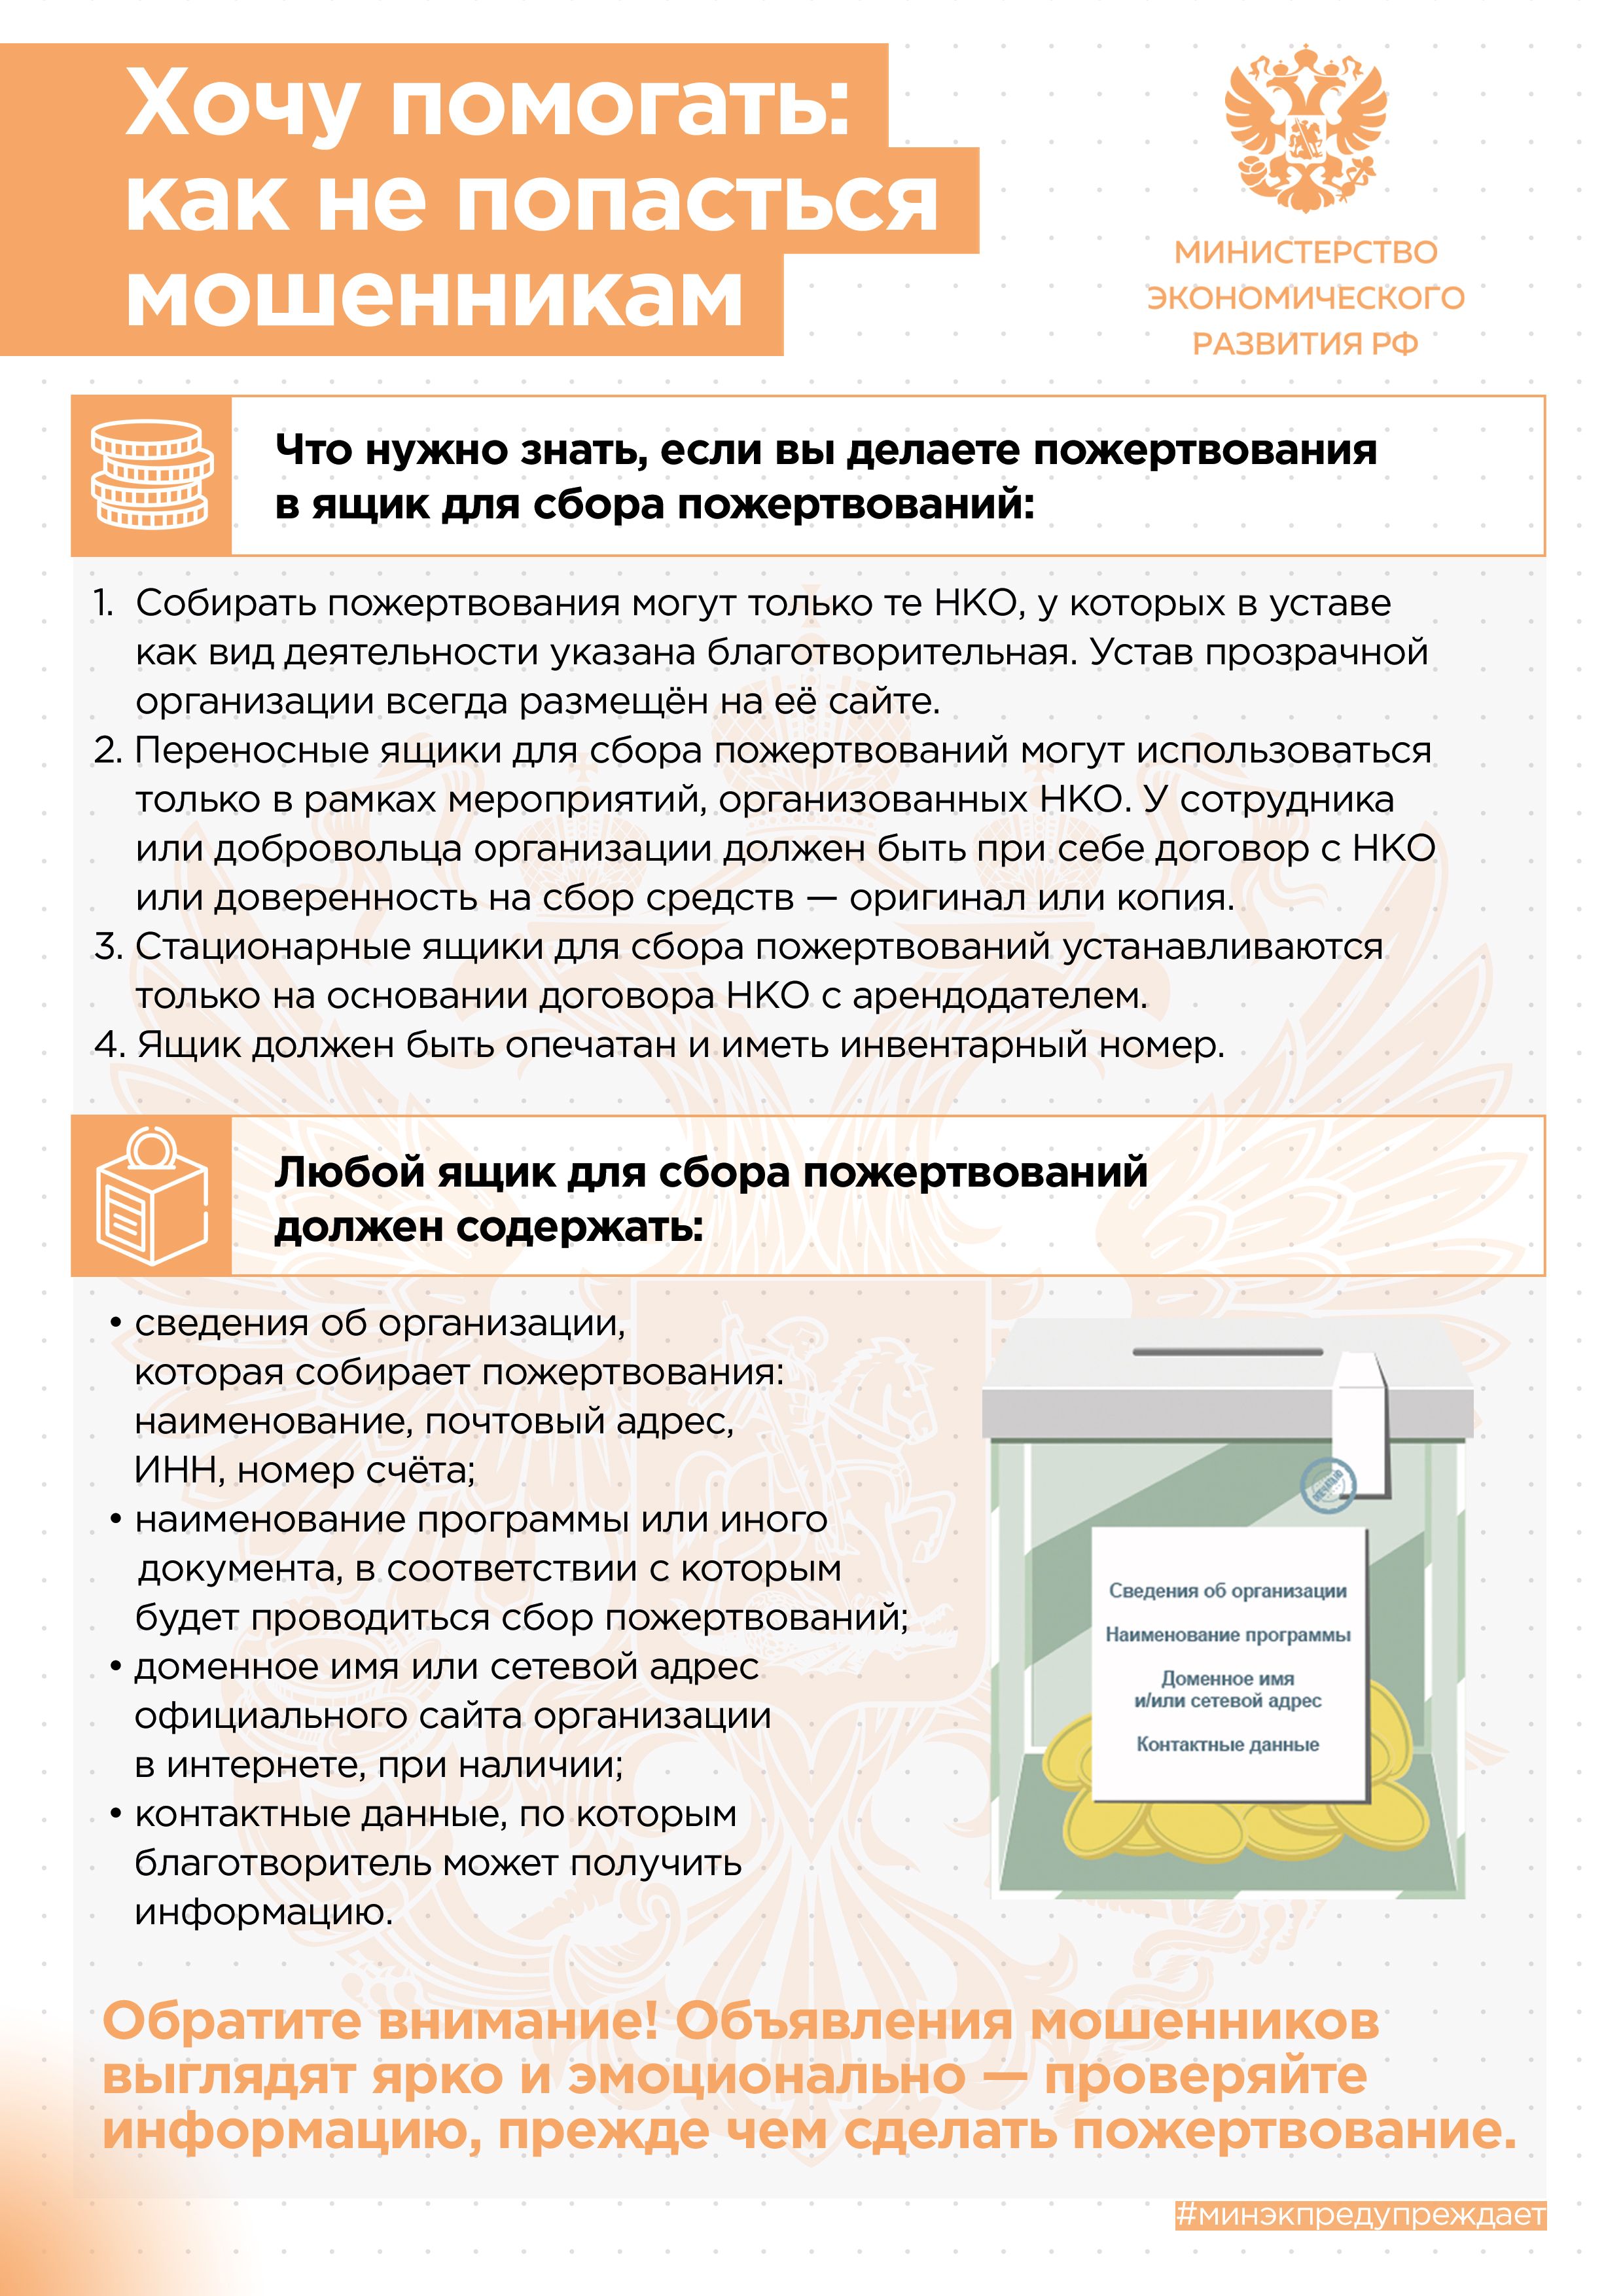 Информационные материалы, подготовленные Минэкономразвития России.